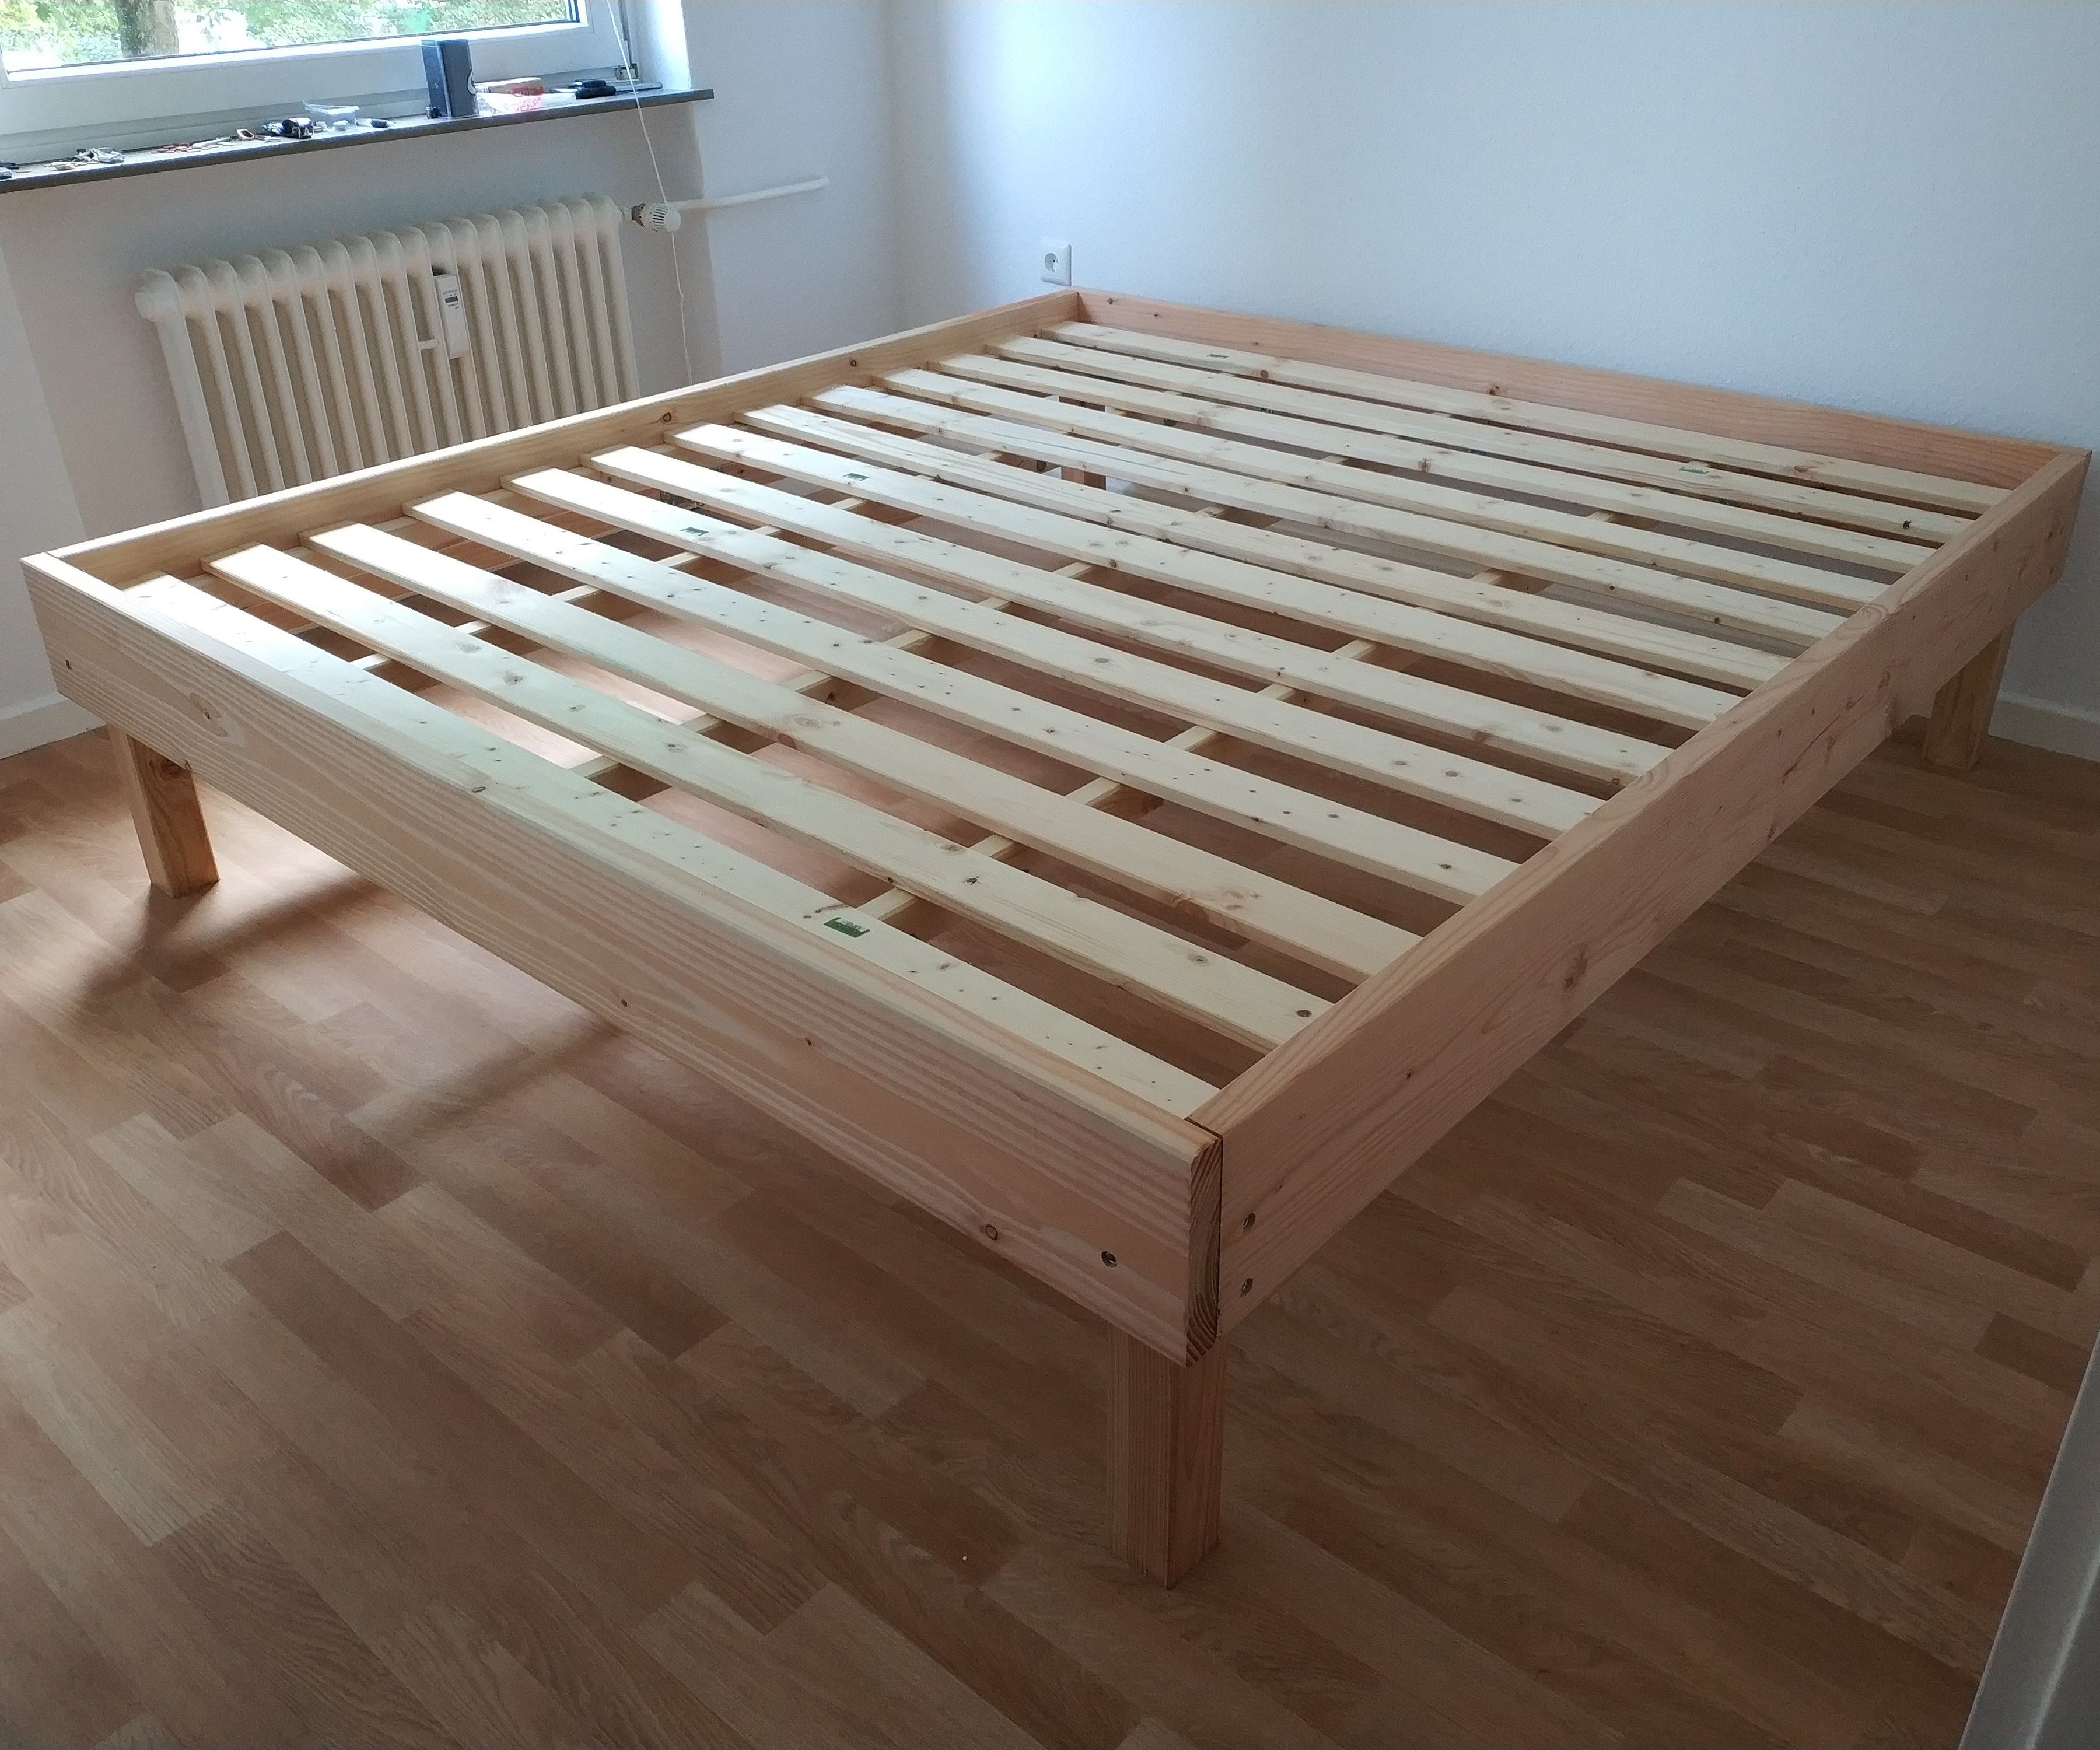 Делаем кровать своими руками из дерева: Как сделать деревянную кровать своими руками